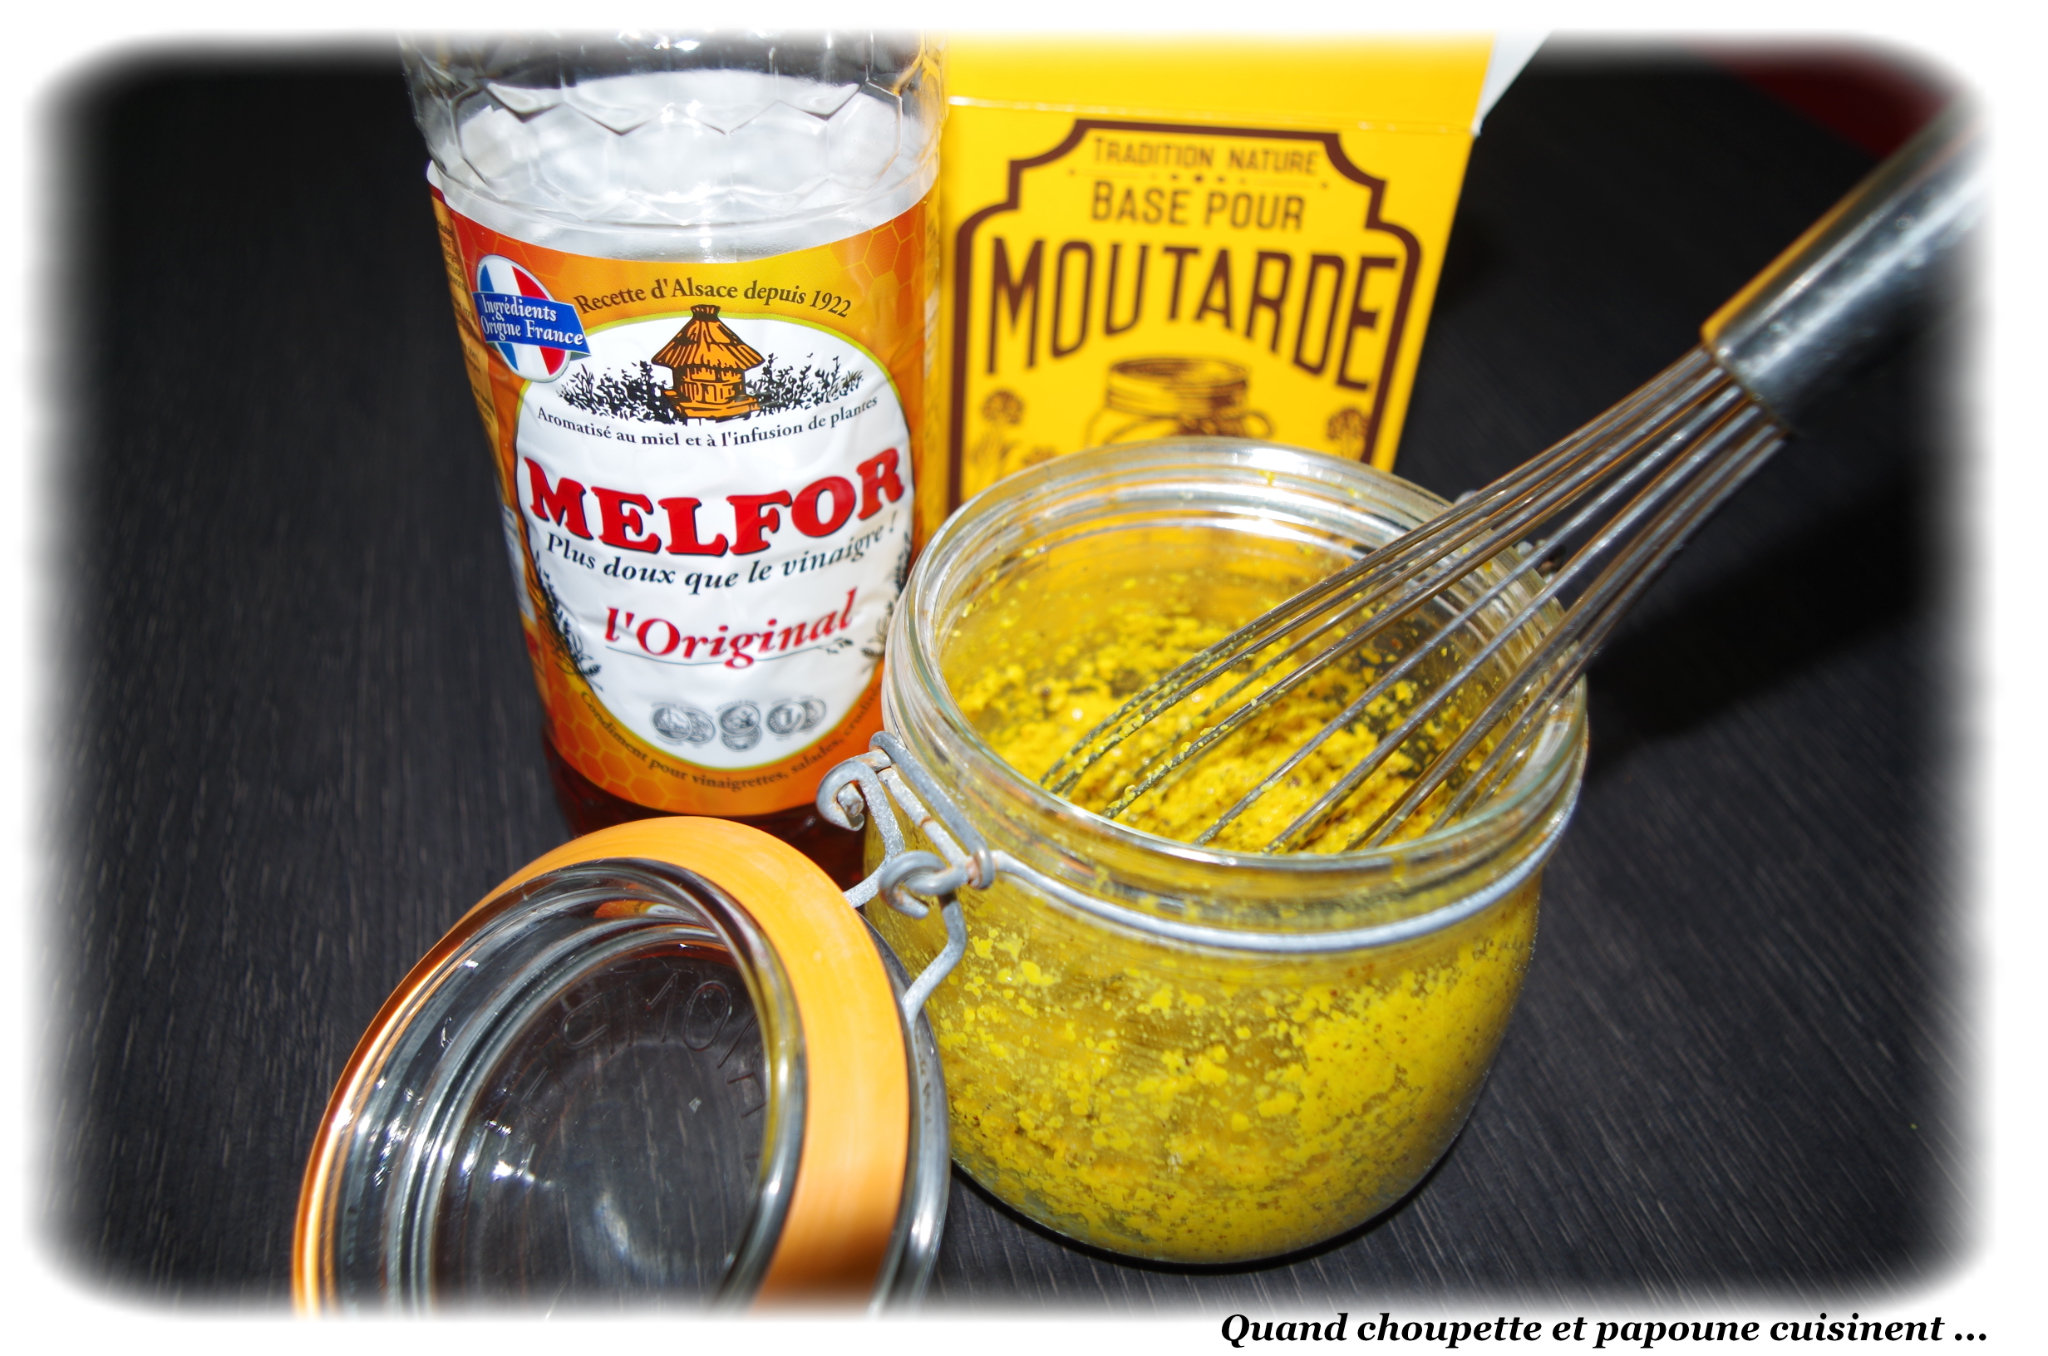 Moutarde jaune en poudre – Tradition Nature